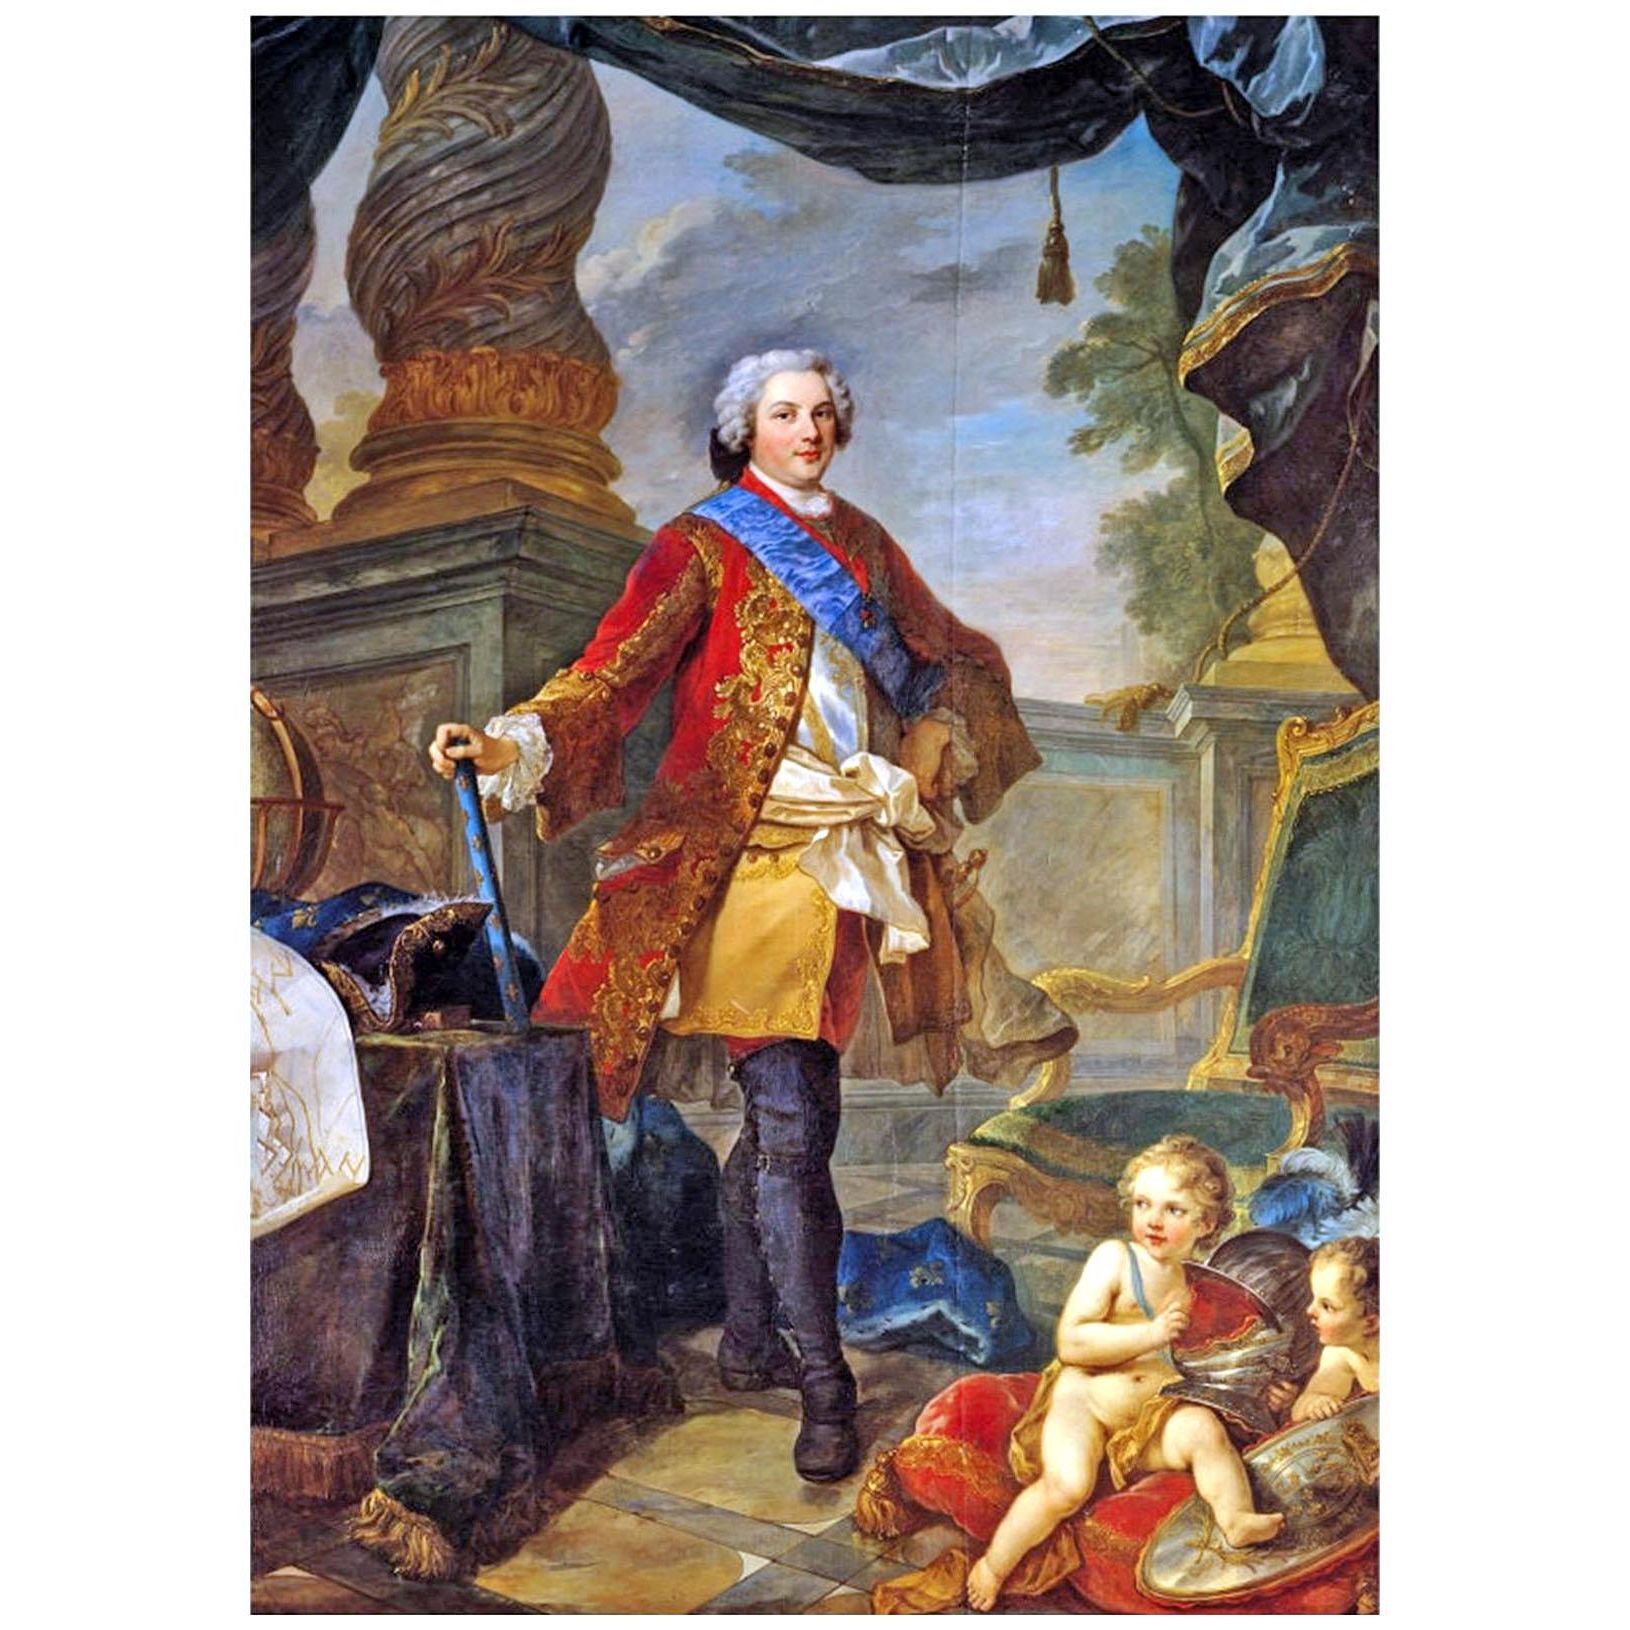 Charles-Joseph Natoire. Louis Dauphin de France. 1747. Chateau de Versailles